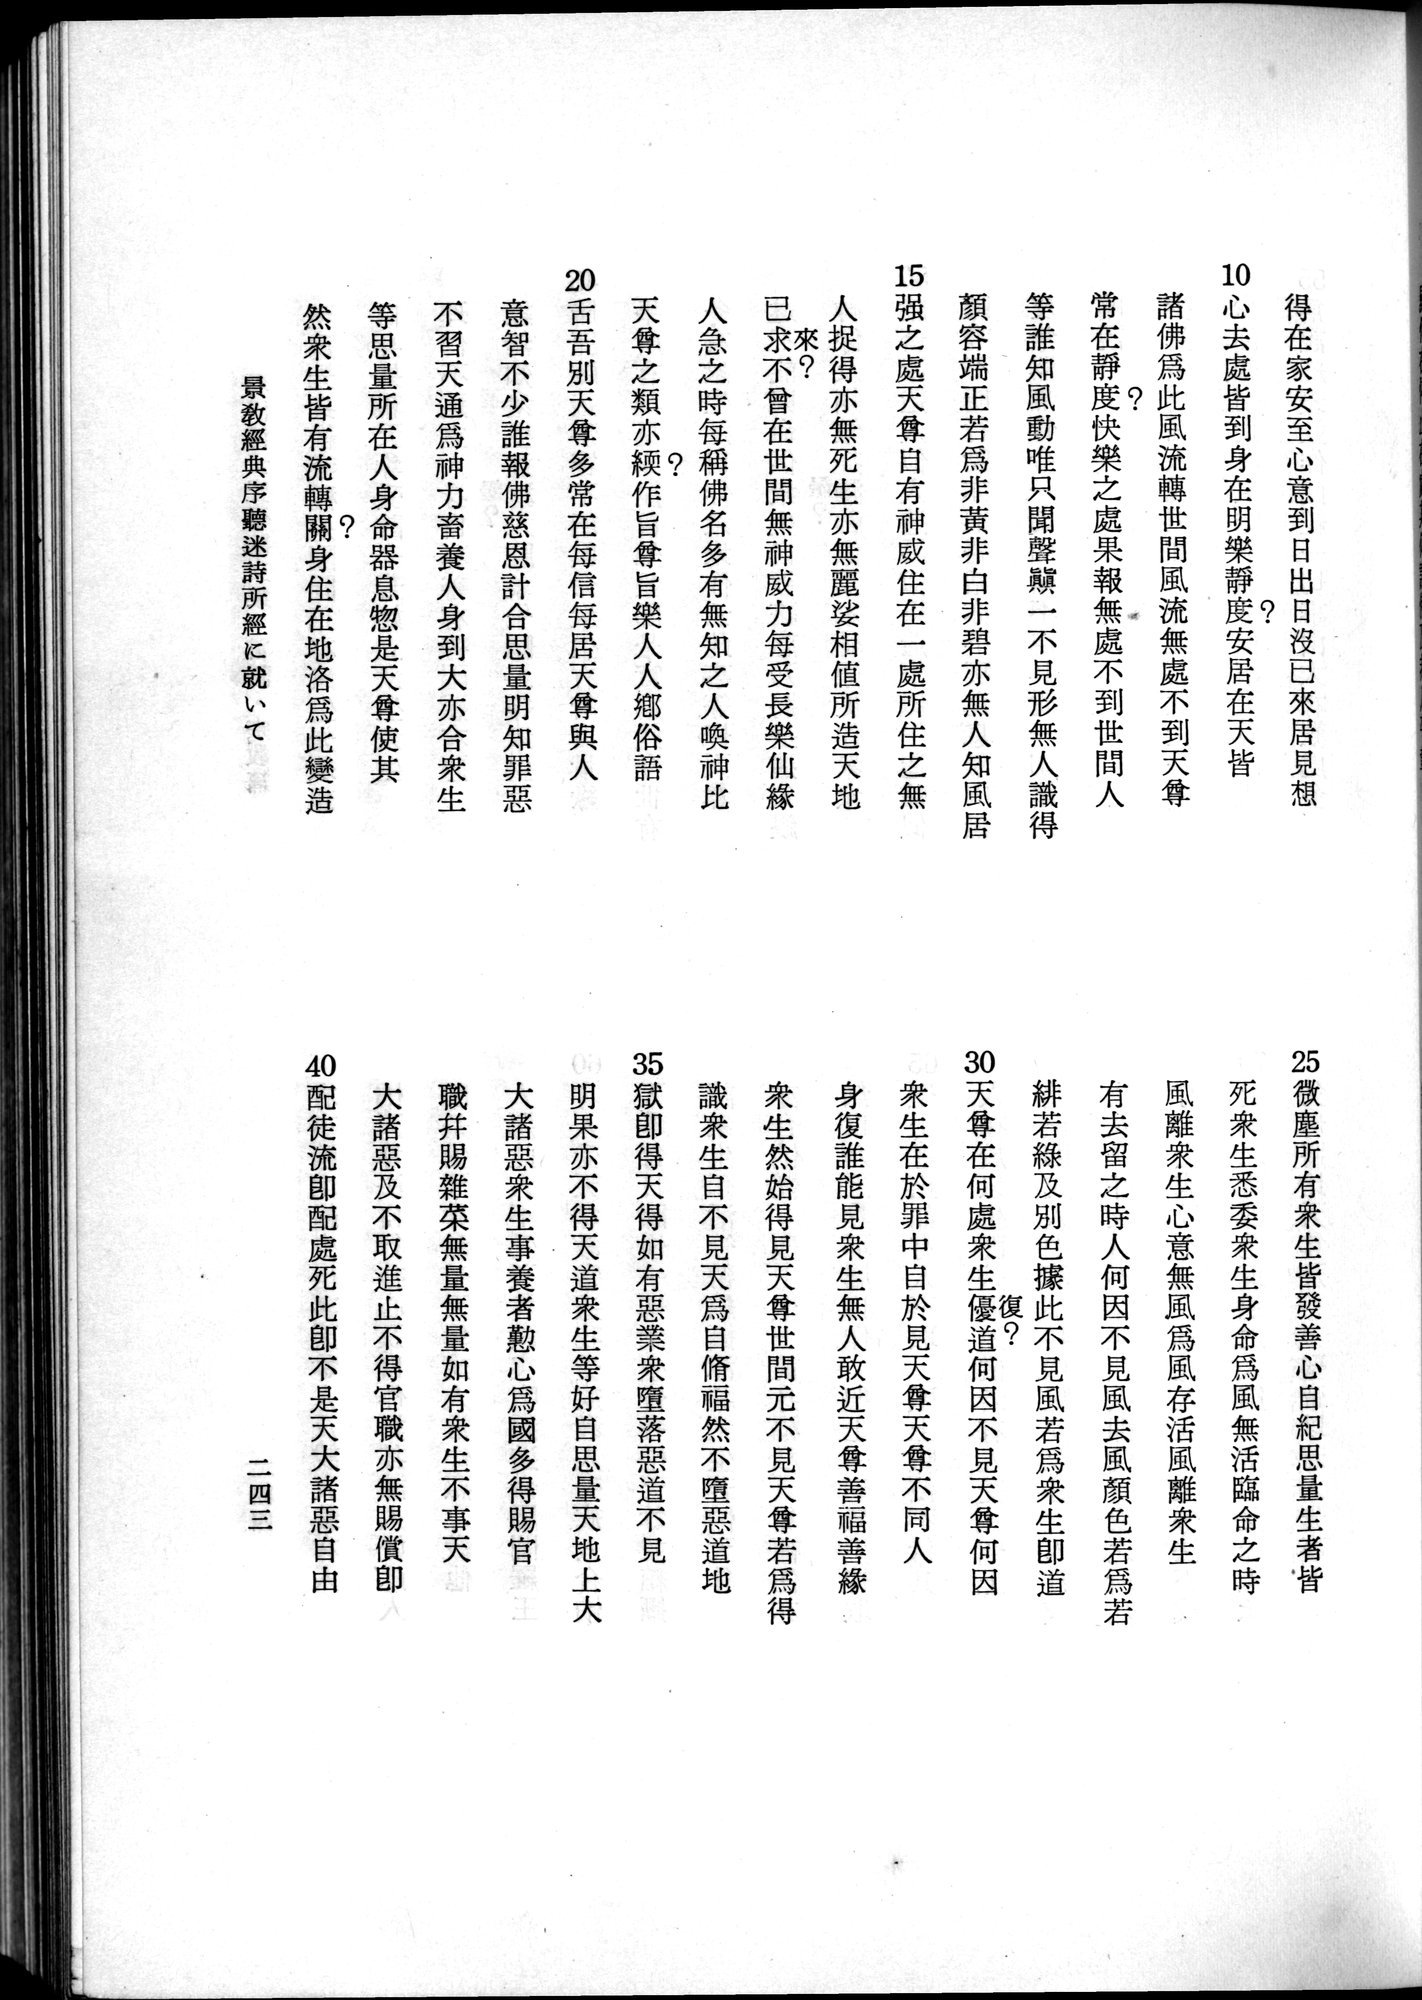 羽田博士史学論文集 : vol.2 / 305 ページ（白黒高解像度画像）